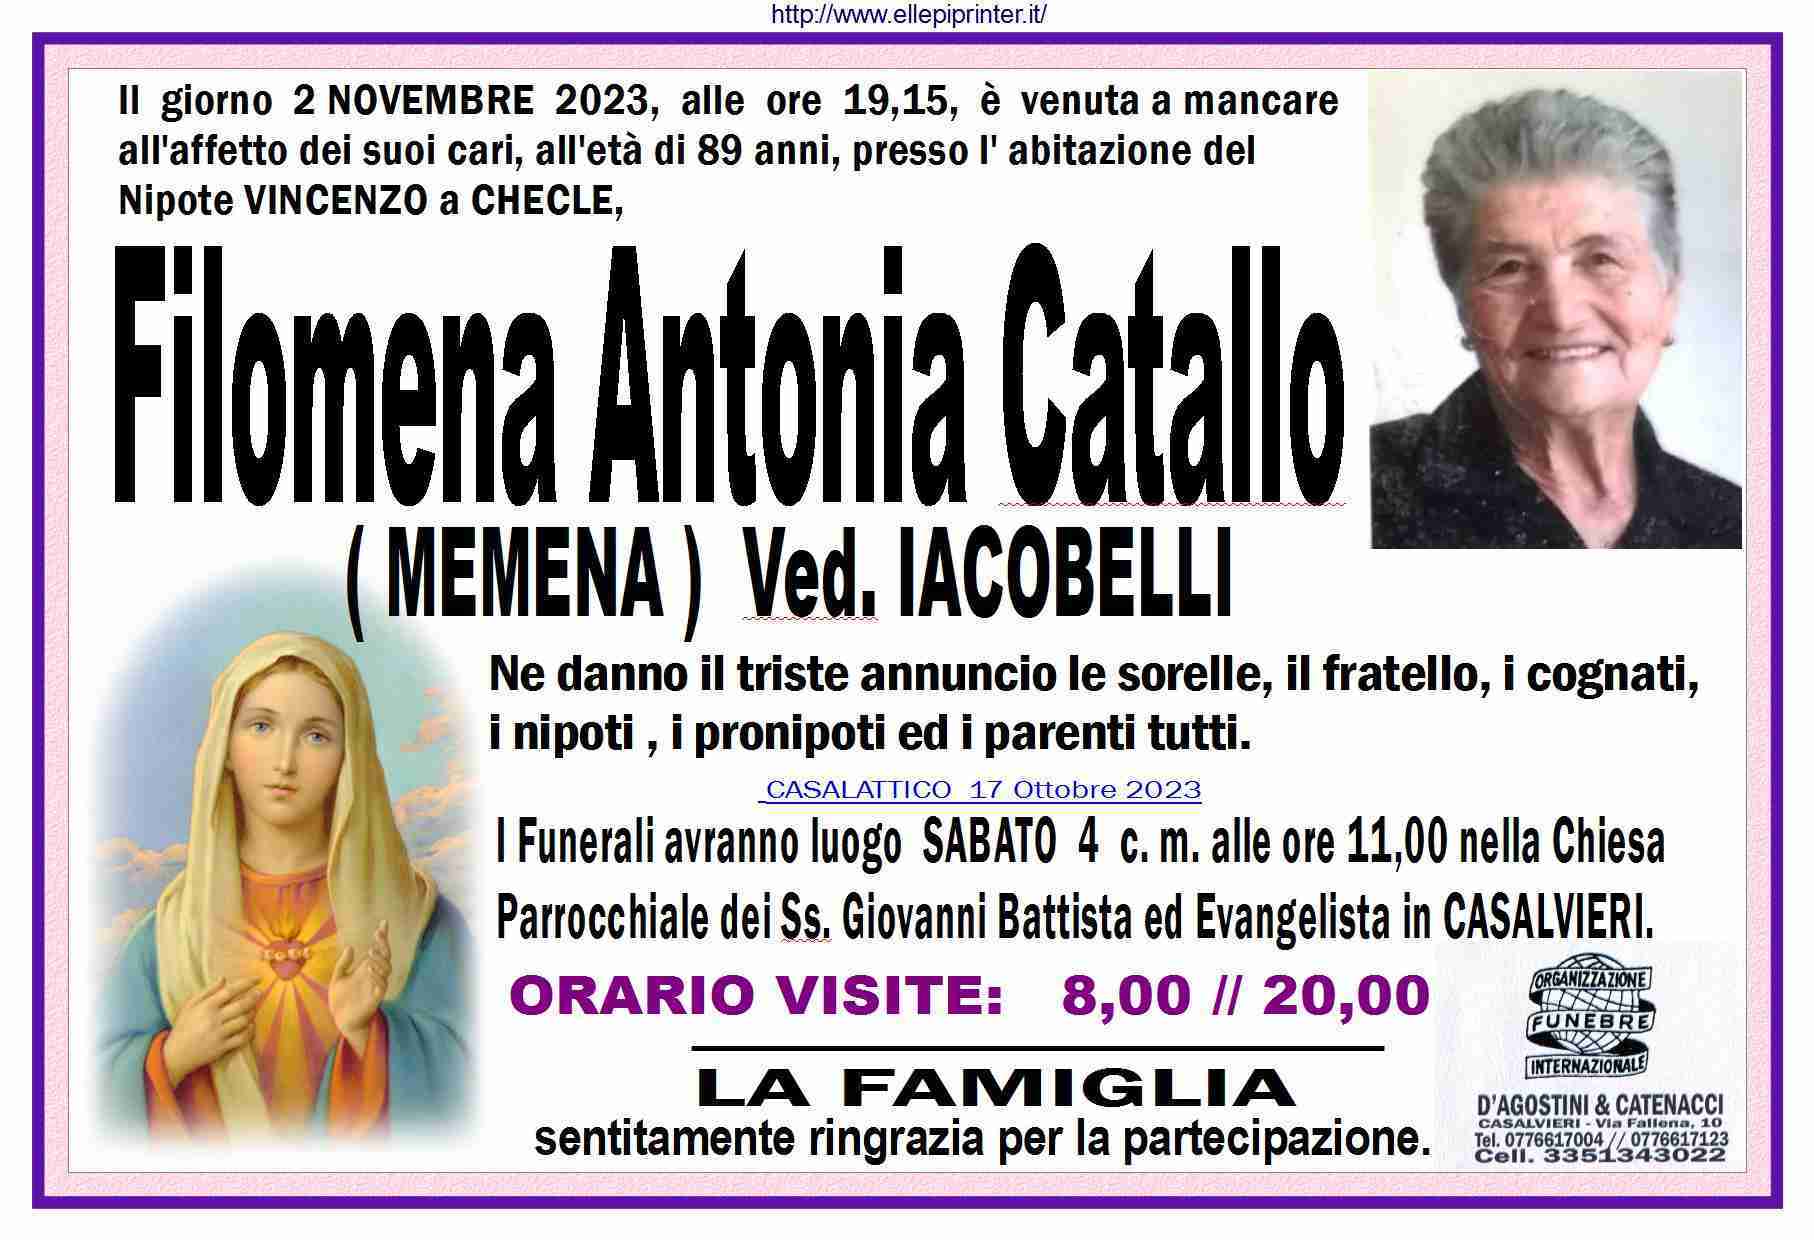 Filomena Antonia Catallo